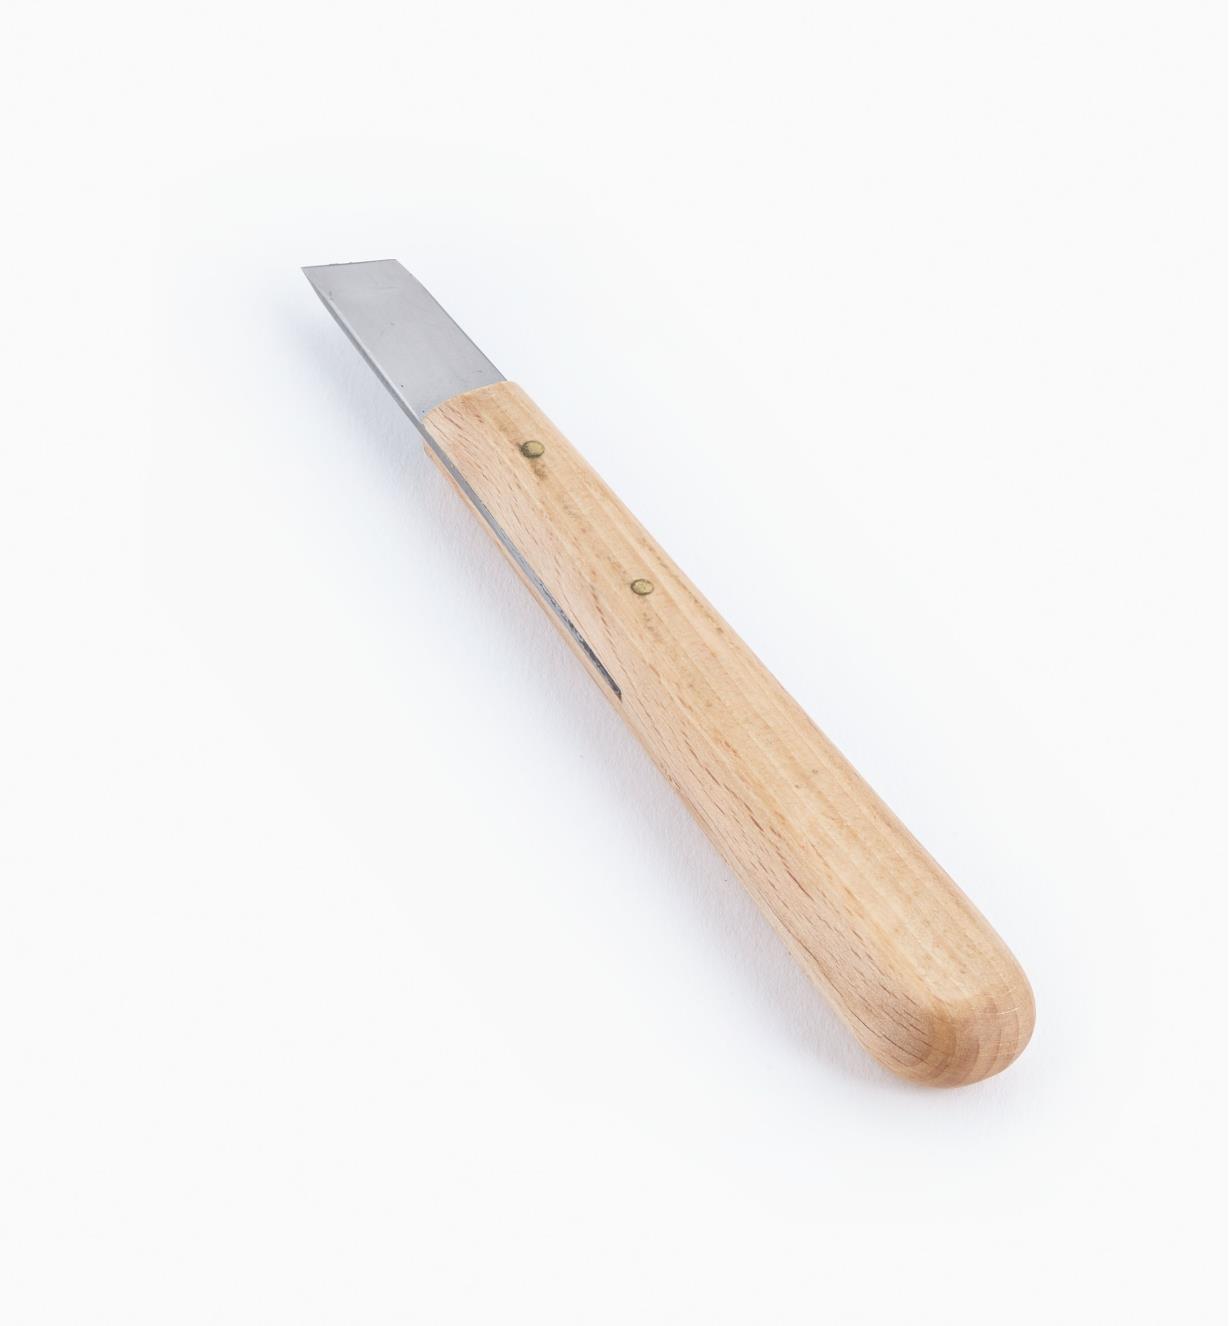 06D0403 - Chip Knife #3